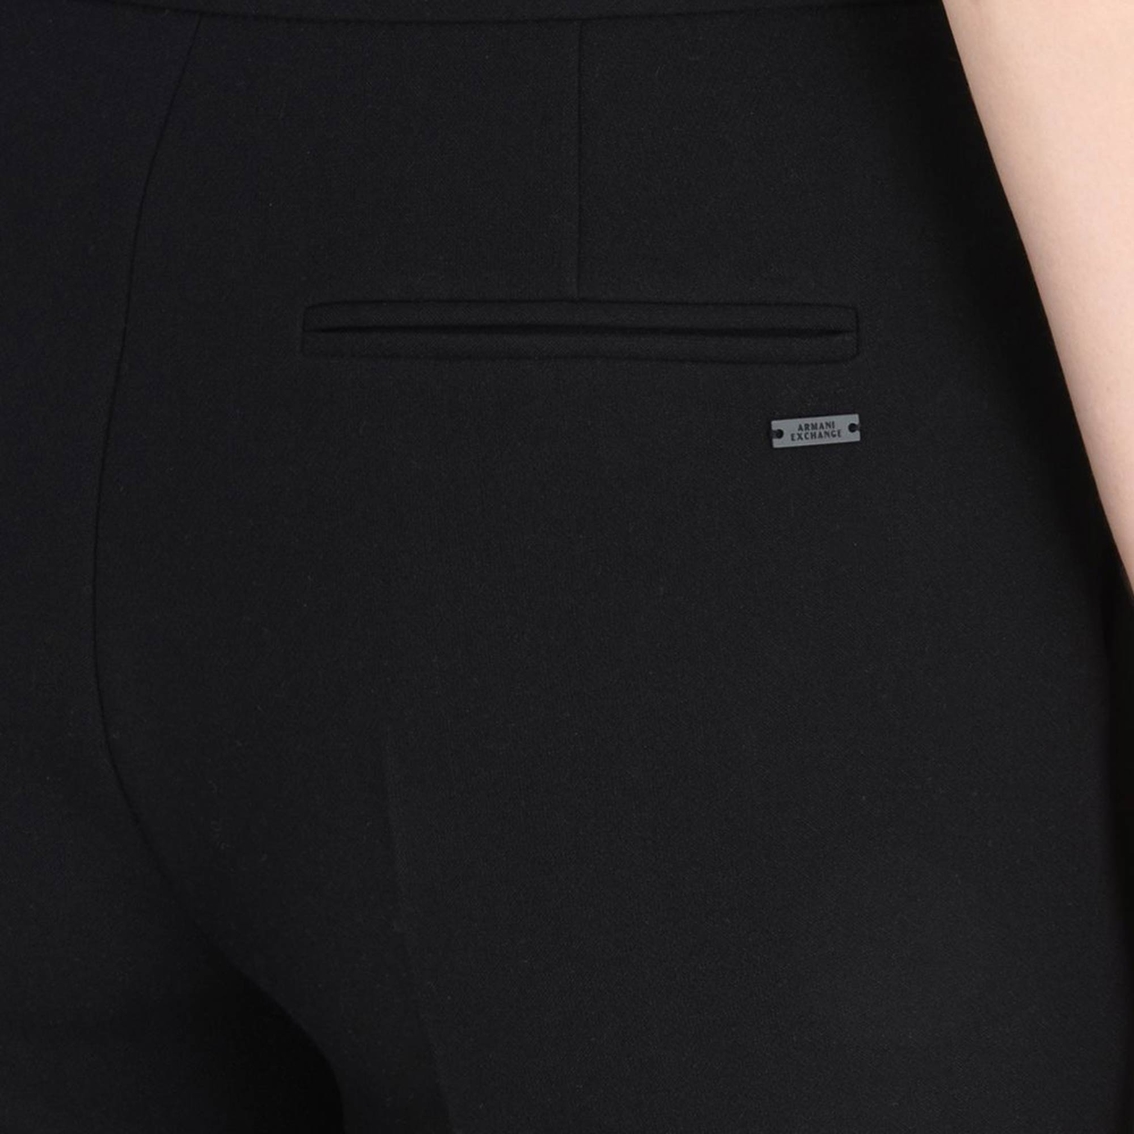 Armani Exchange Flat Front Slim Pants - Image 3 of 3